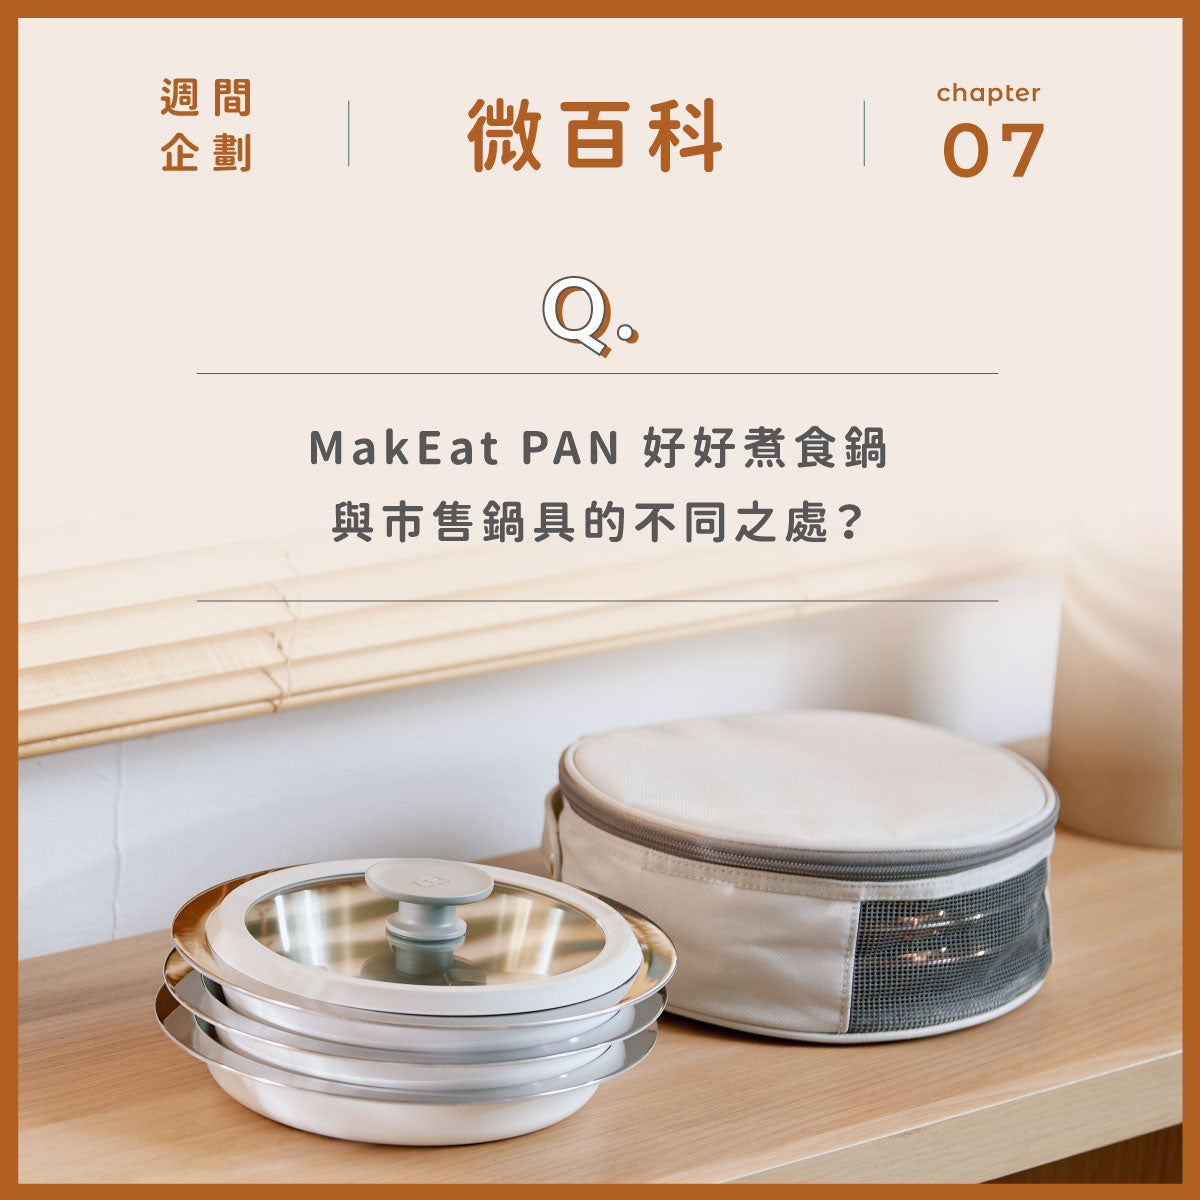 靈魂大拷問！ MakEat PAN 與市售鍋具的不同之處？